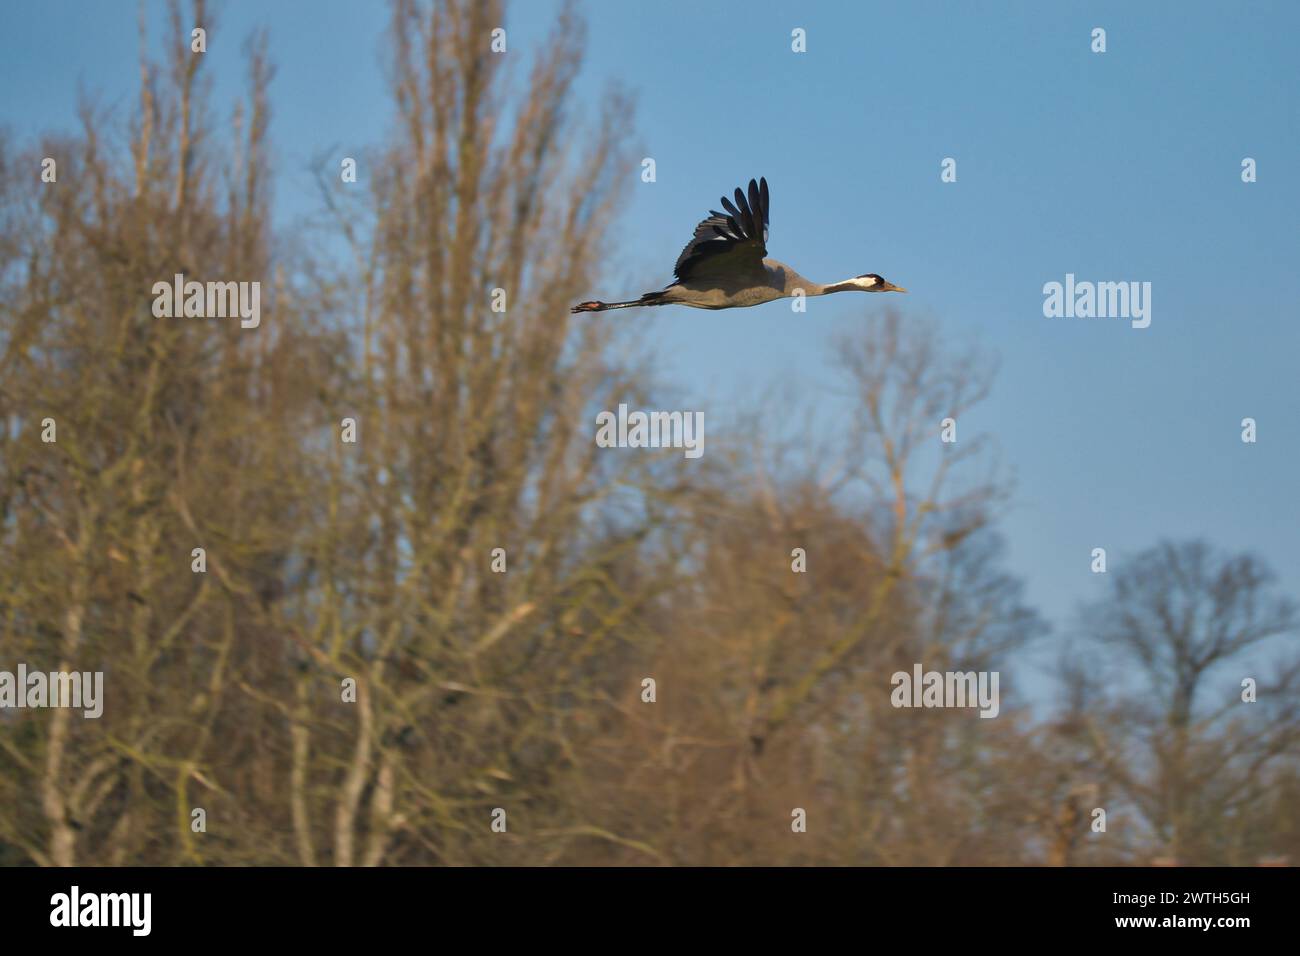 Les grues volent dans le ciel bleu devant les arbres. Oiseaux migrateurs sur le Darss. Photo de la faune de la nature en Allemagne Banque D'Images